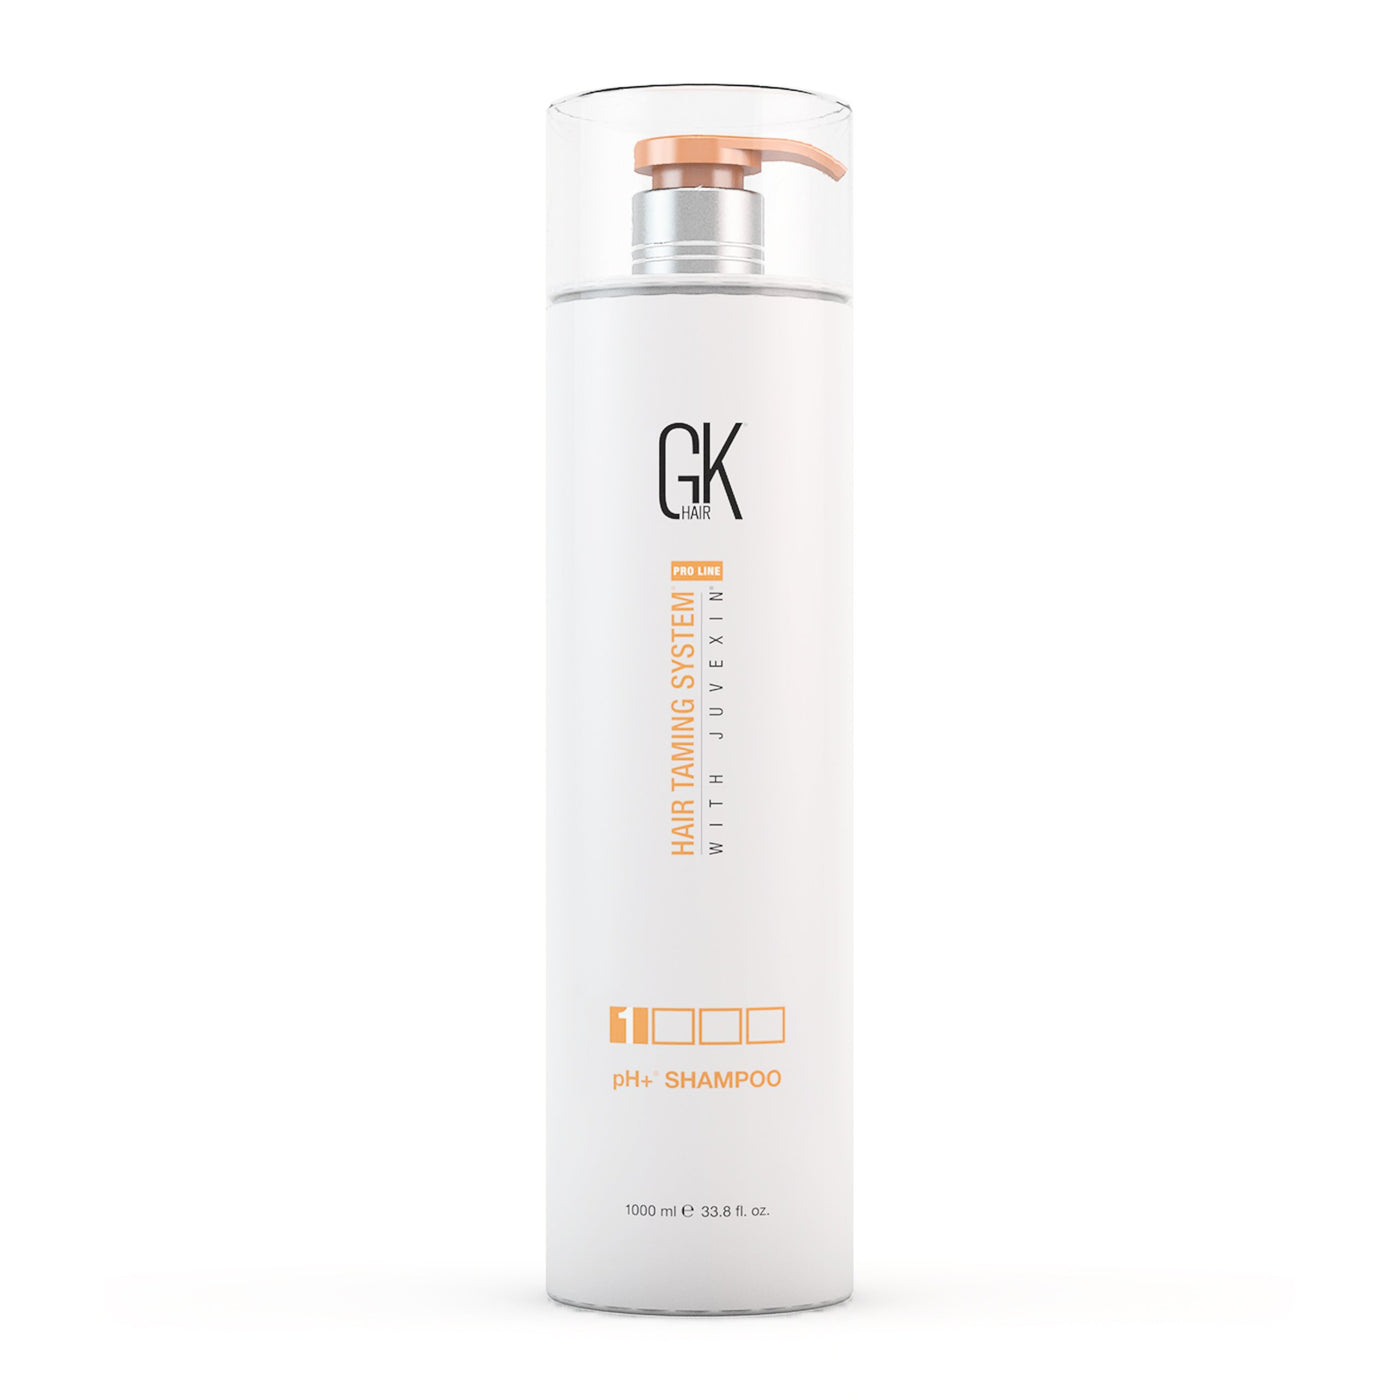 Buy pH+ Hair Shampoo 1000ml | GK Hair Clarifying Shampoo